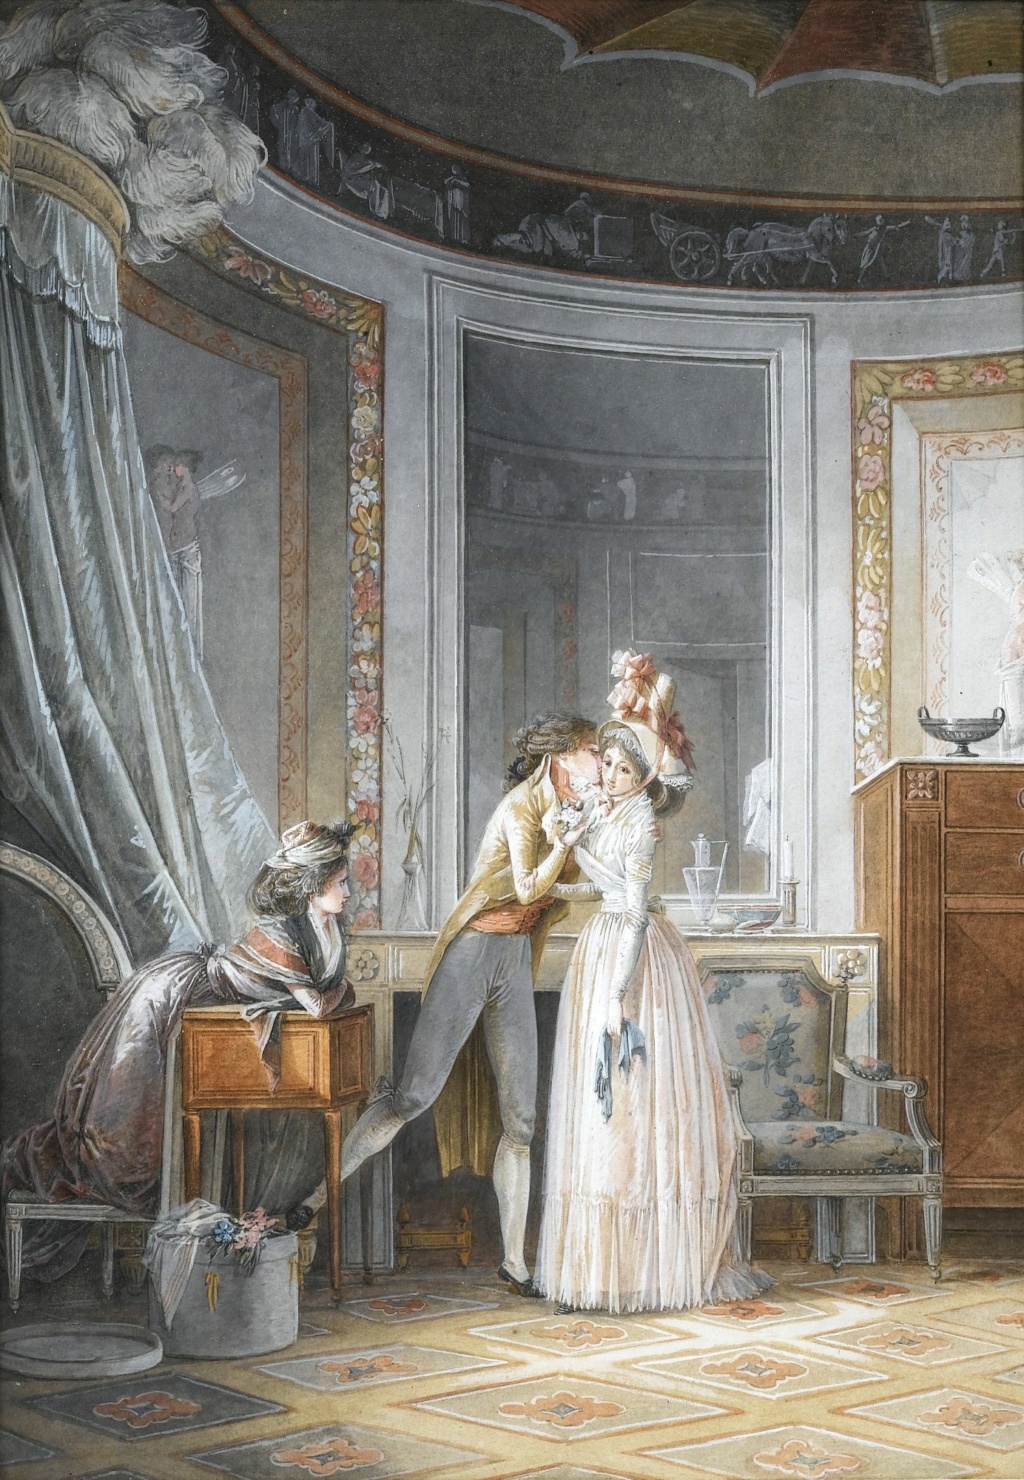 Le peintre Jean-Baptiste Mallet (1759 - 1835) : chroniques de la société française de la fin du 18e siècle à la Restauration Fbbfe510